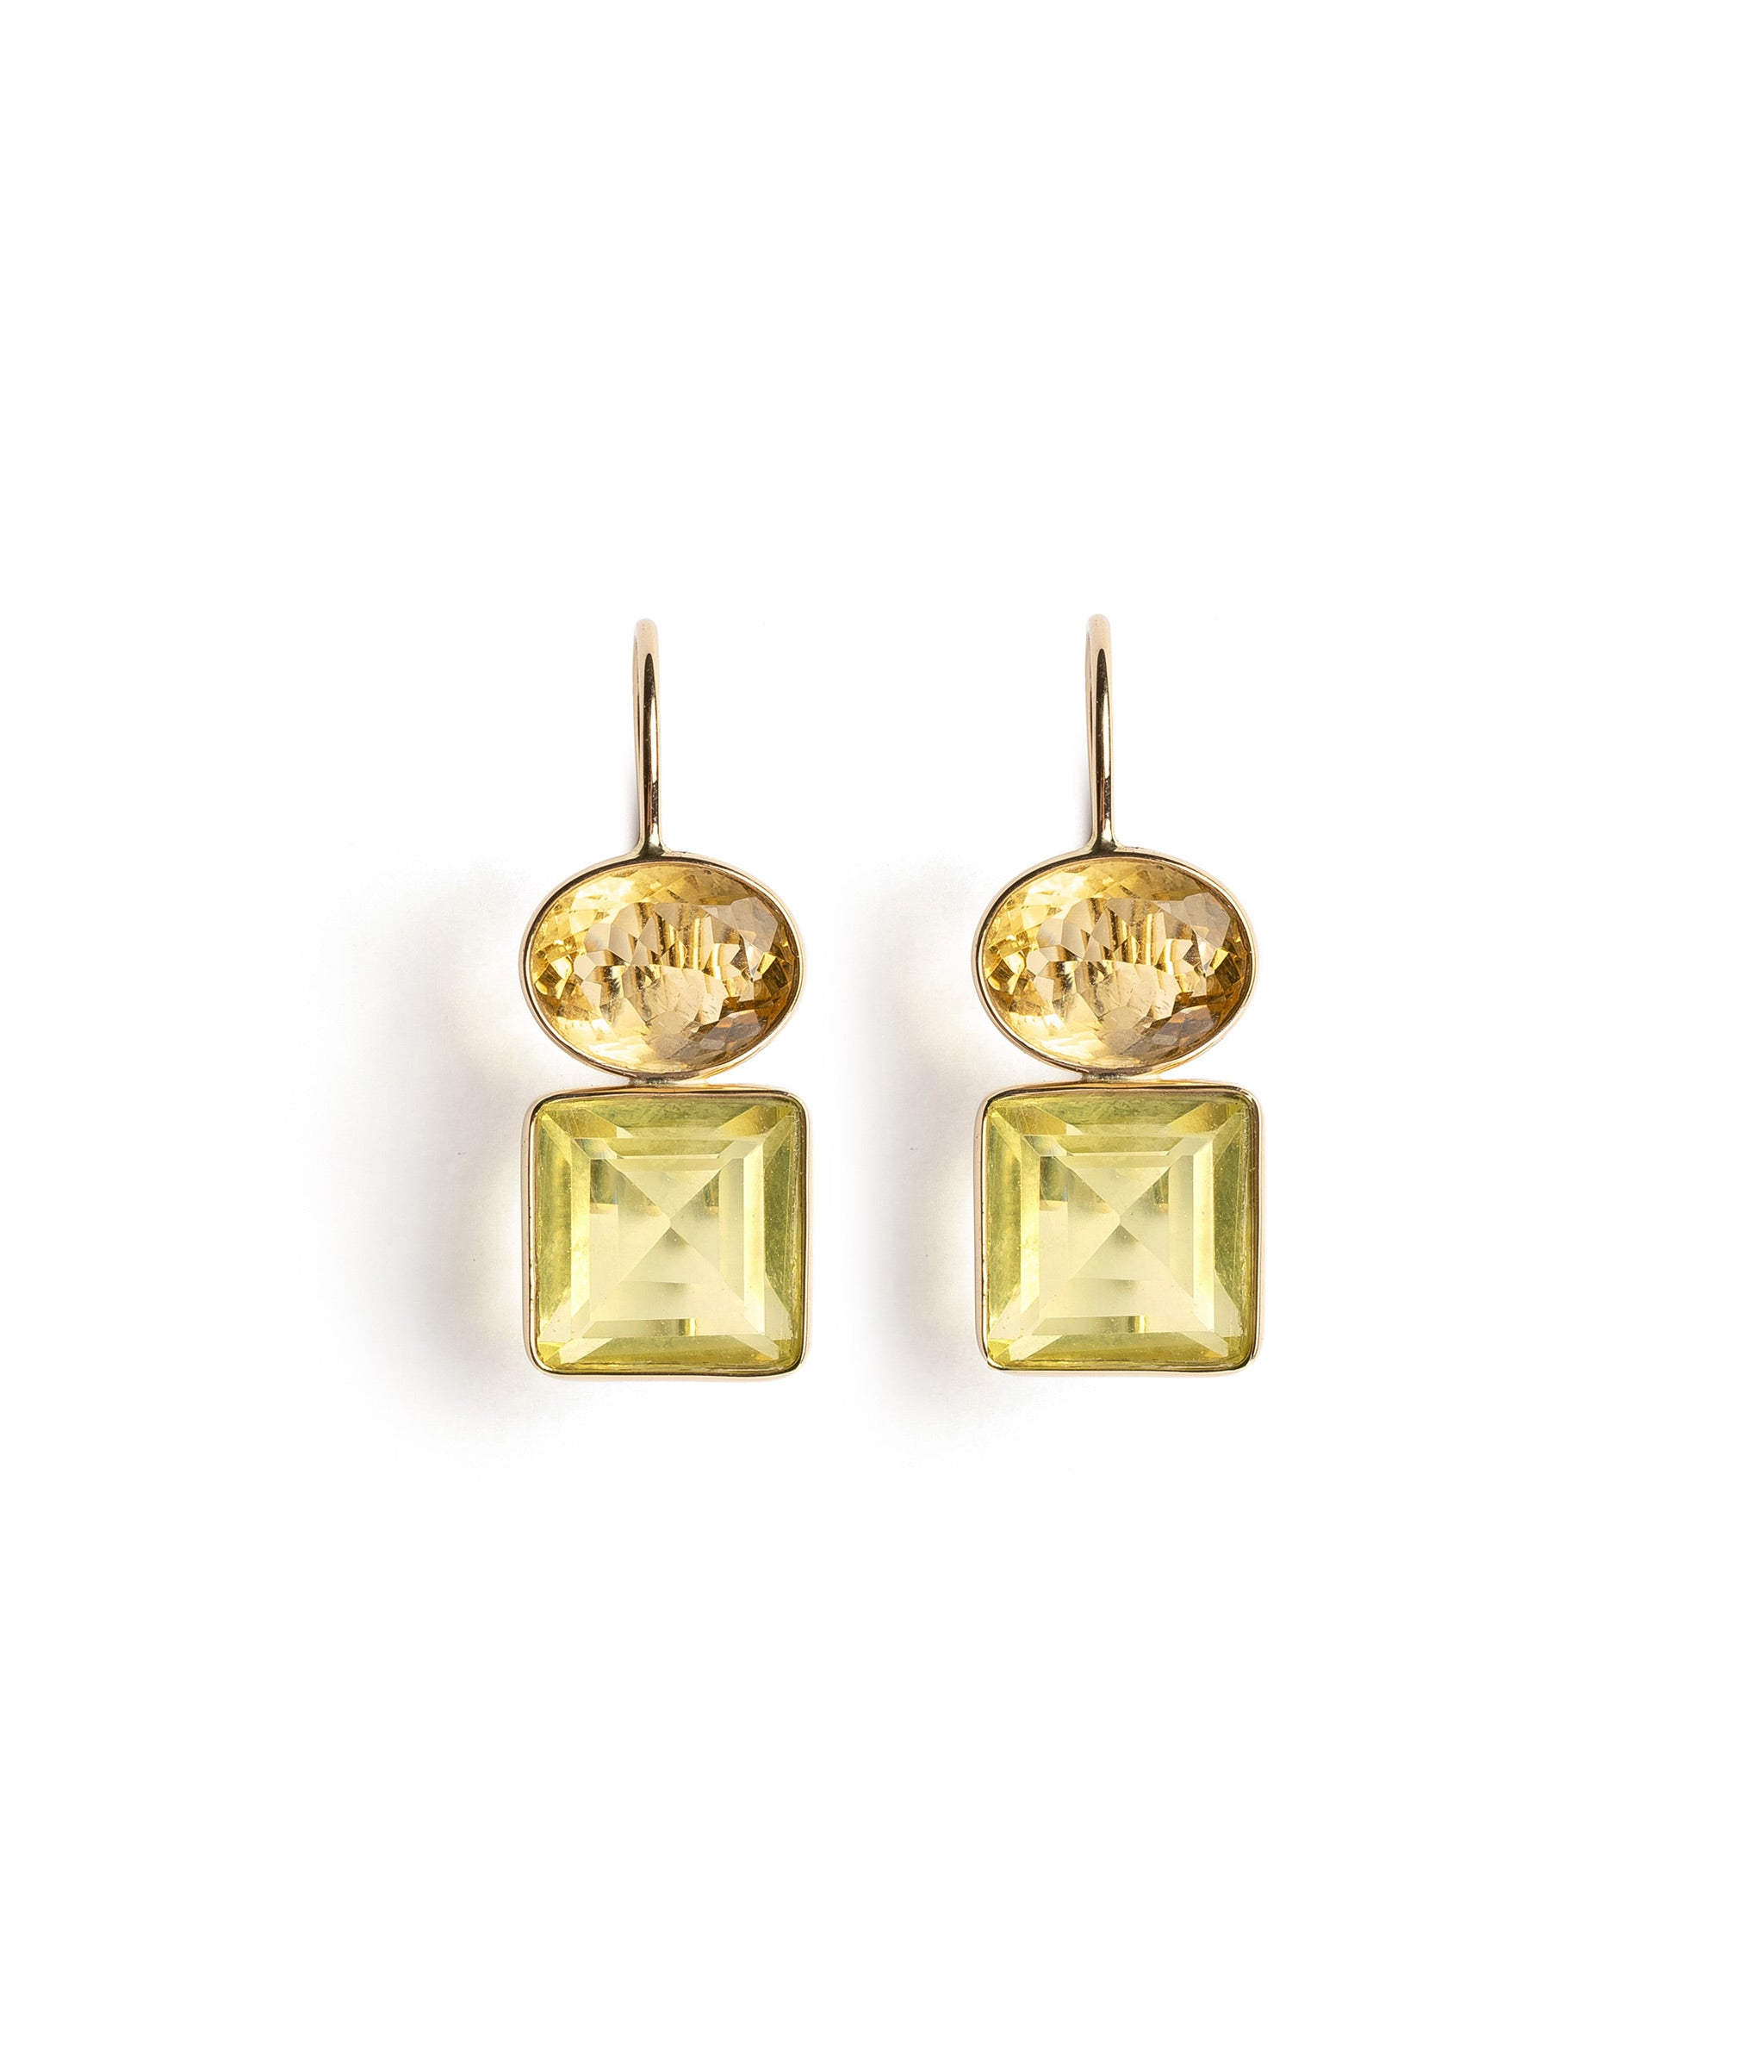 14k Gold Duo Earrings in Citrine and Lemon Quartz